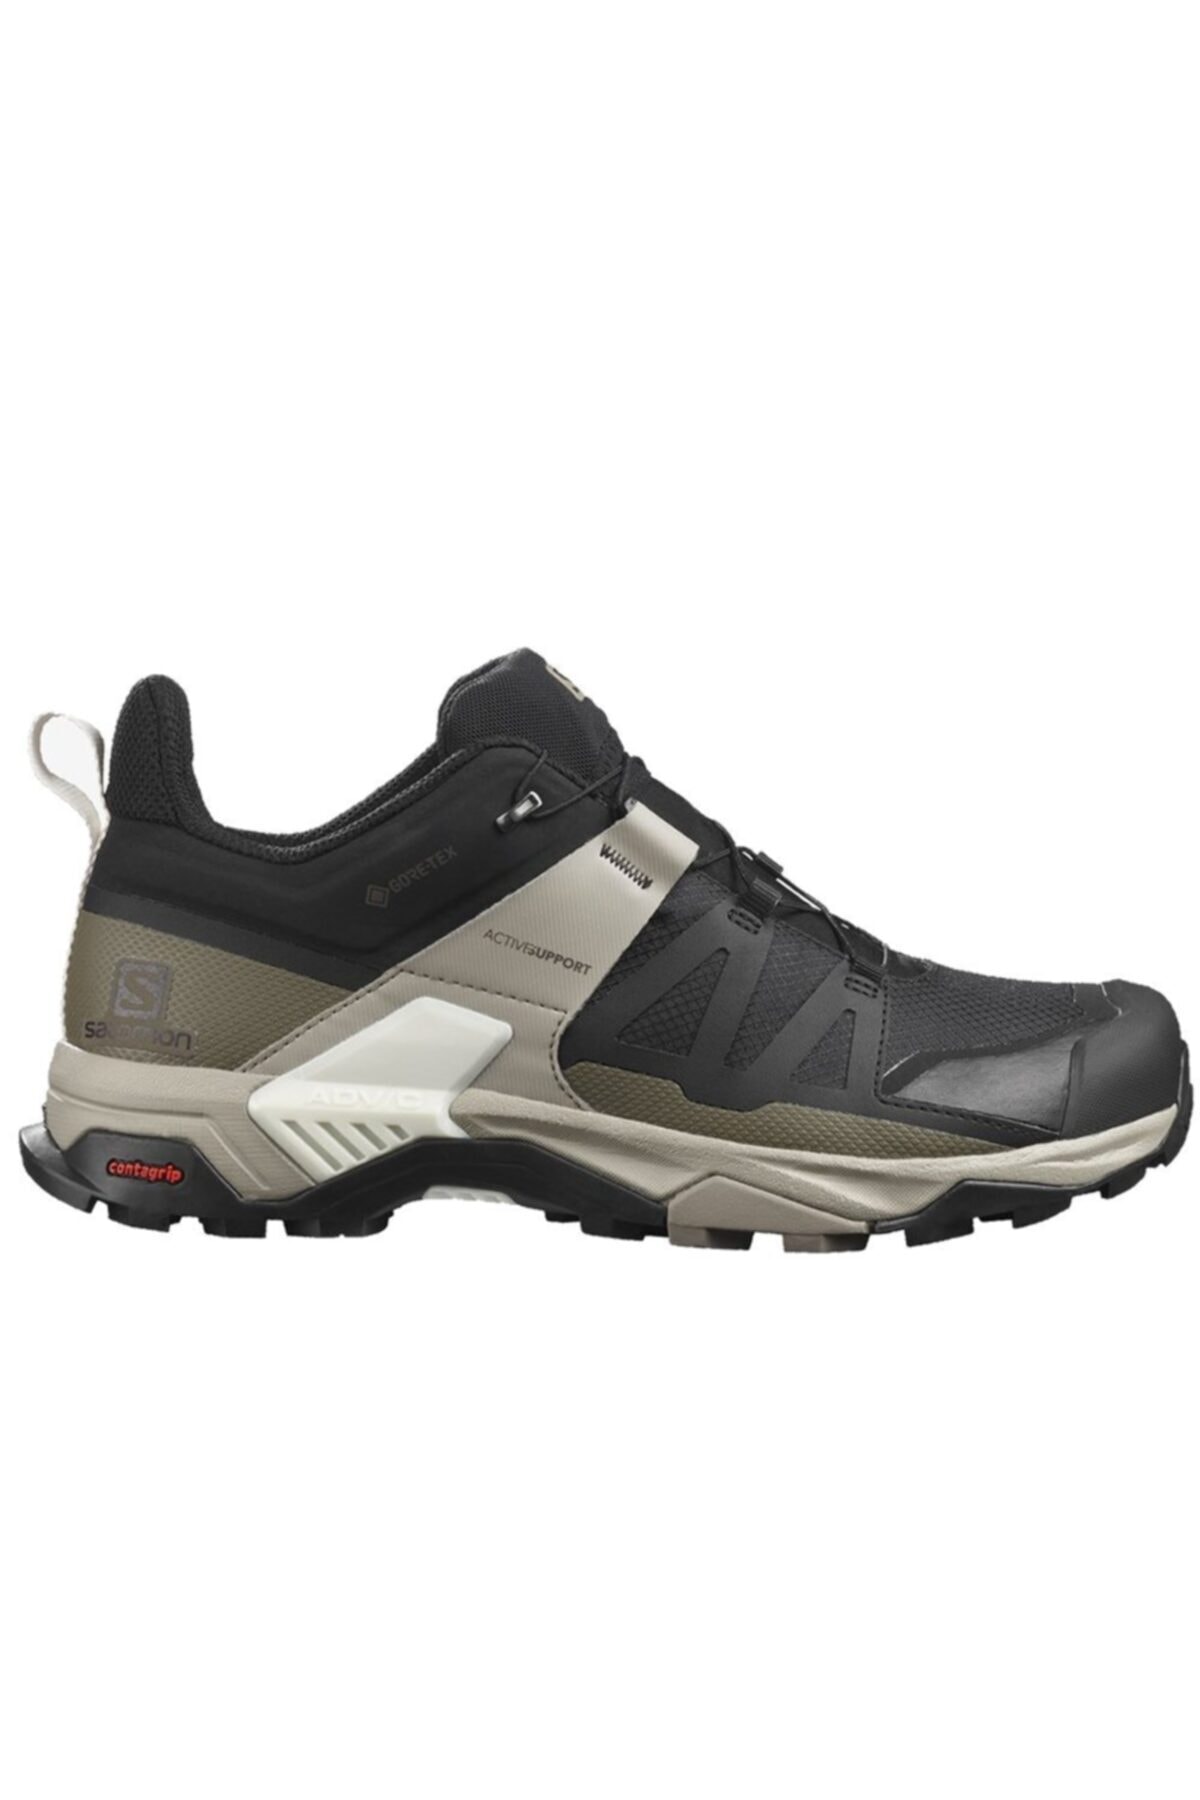 X Ultra 4 Gore-tex® Erkek Outdoor Ayakkabı L41288100-Siyah-yeşil